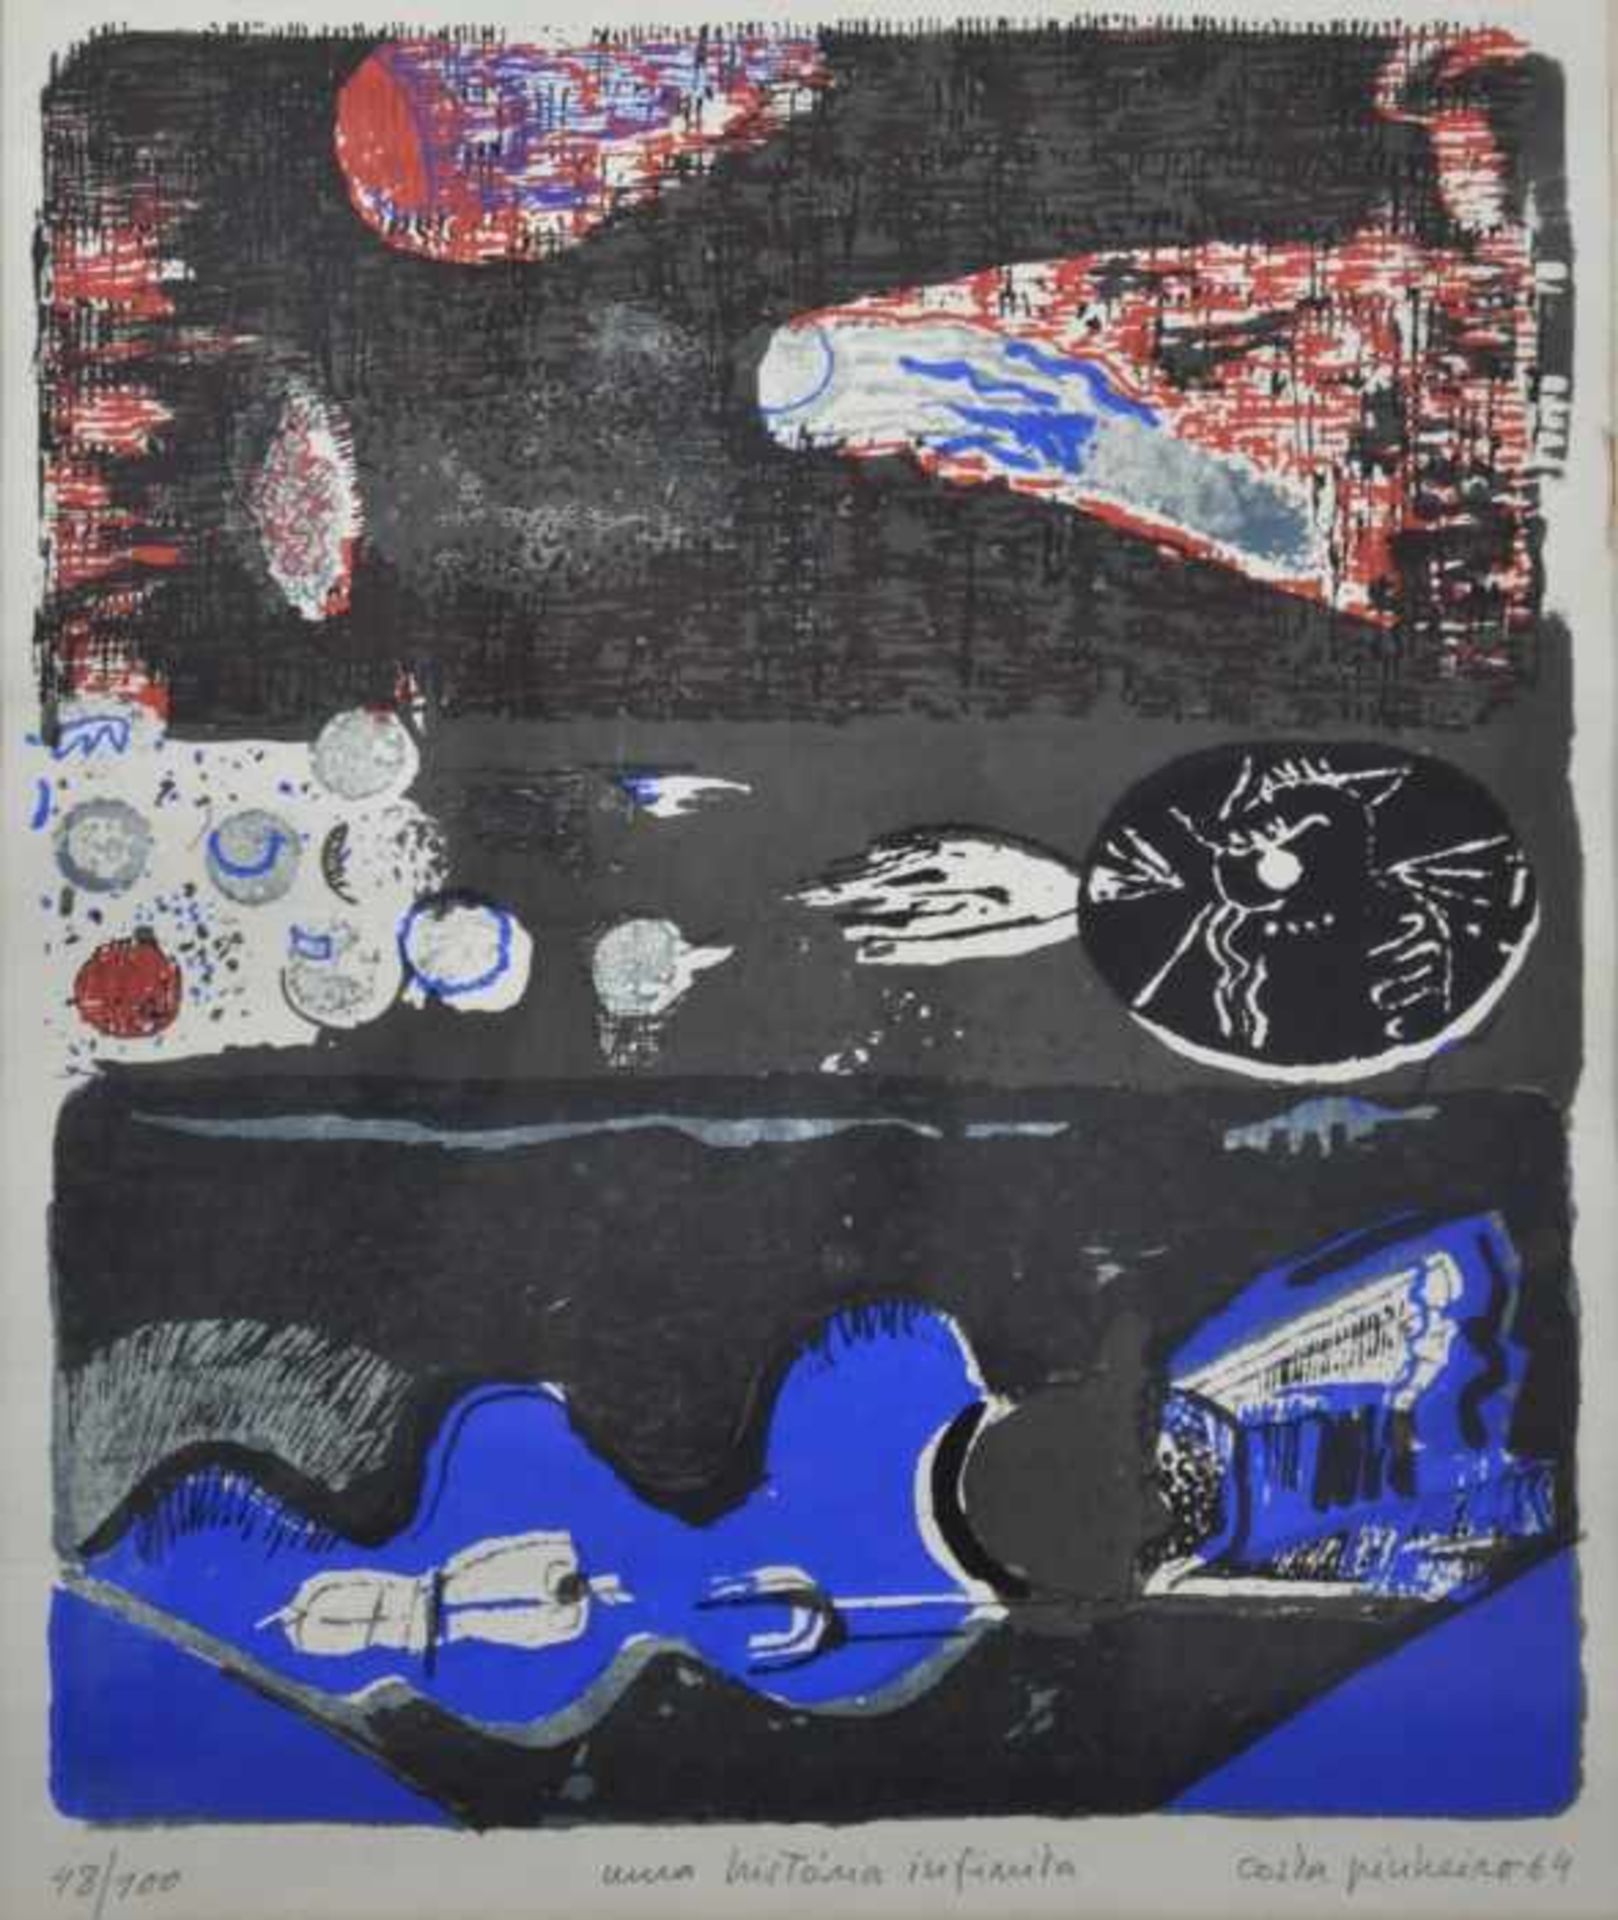 PINHEIRO António Costa (1932 Moura - 2015 München) "Una historia infinito", Komposition in Blau/